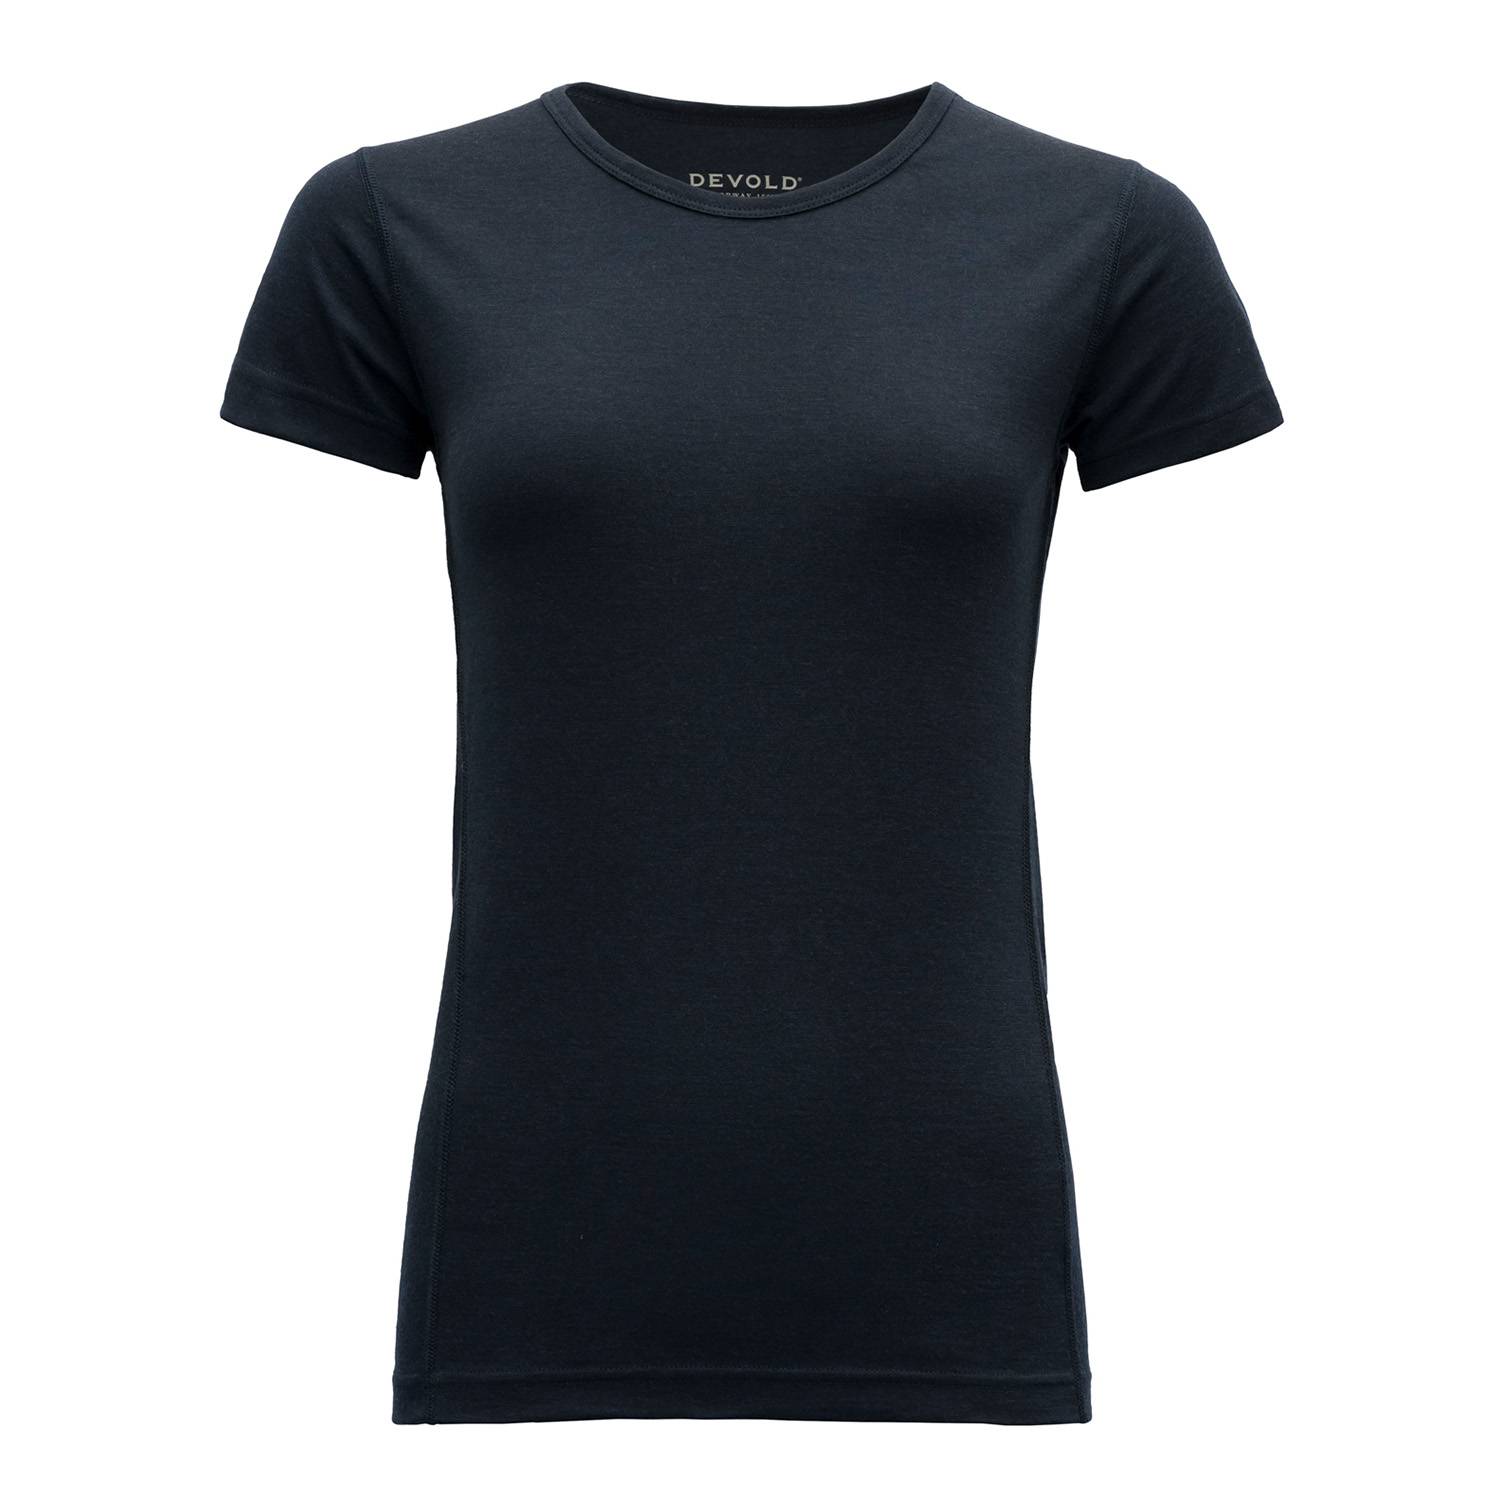 Devold Breeze Woman T-Shirt T-Shirt schwarz